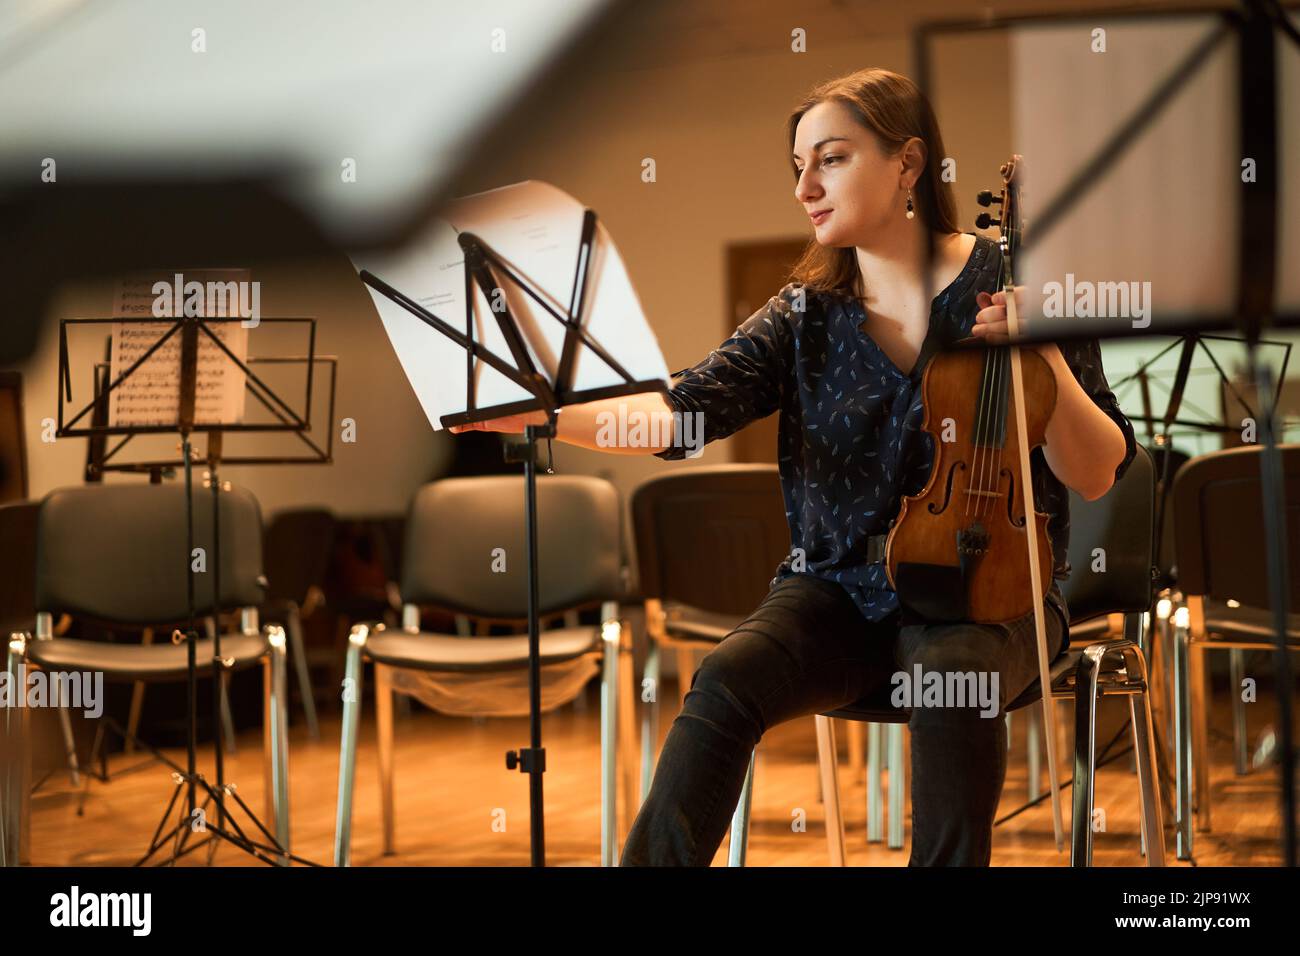 rehearsal, violinist, geigenspiel, geigenspielerin, rehearsals, violinists Stock Photo